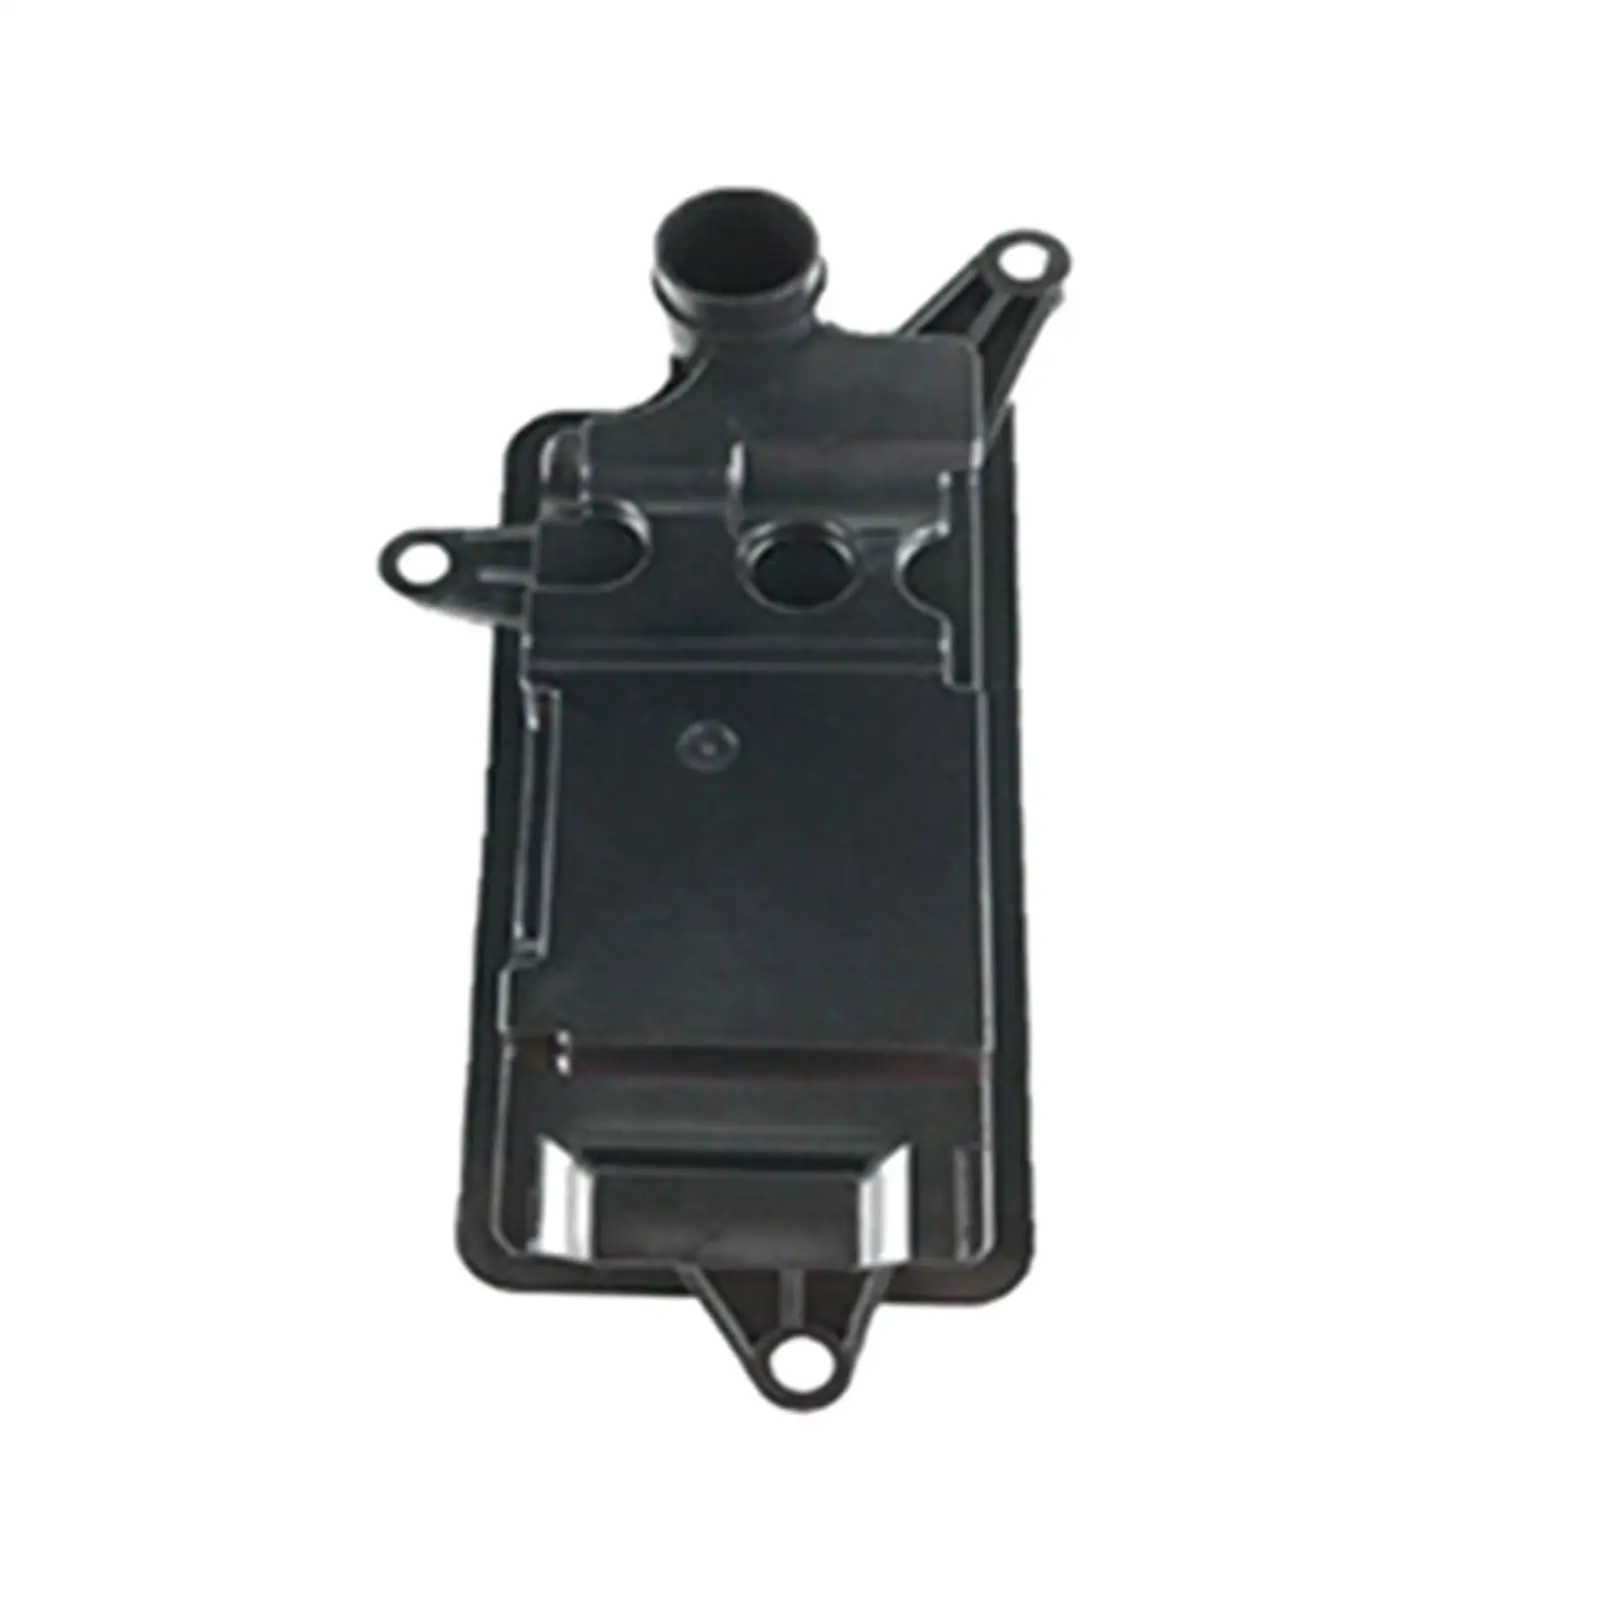 Transmission Filter Cooler Gasket 69710U Black Durable Replaces for Subaru